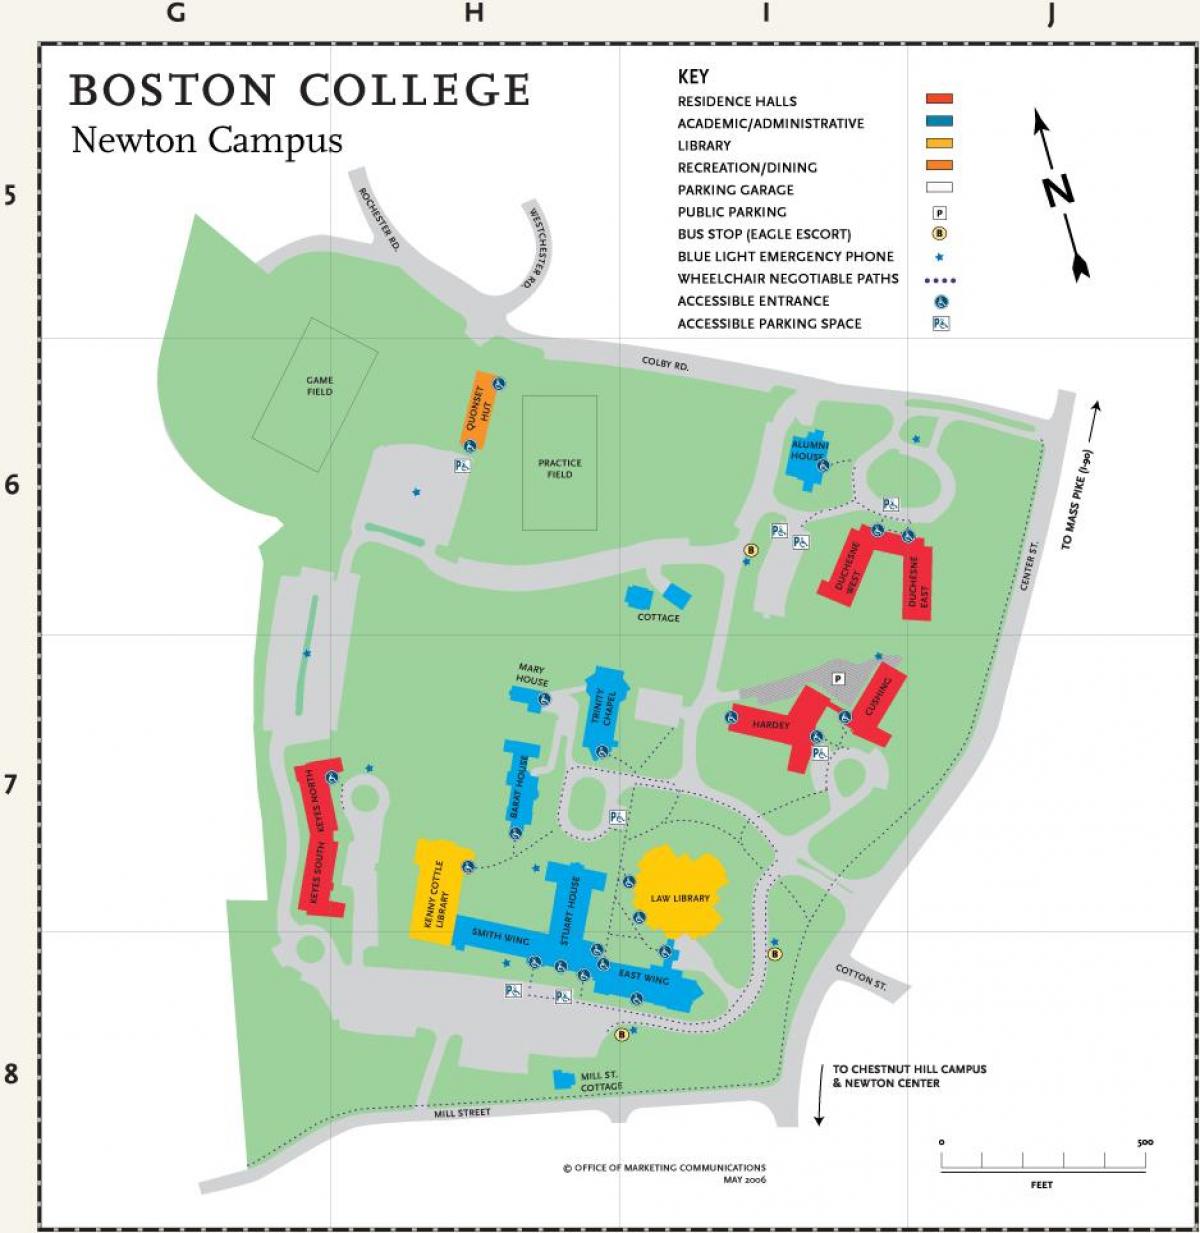 карту Бостанскага каледжа